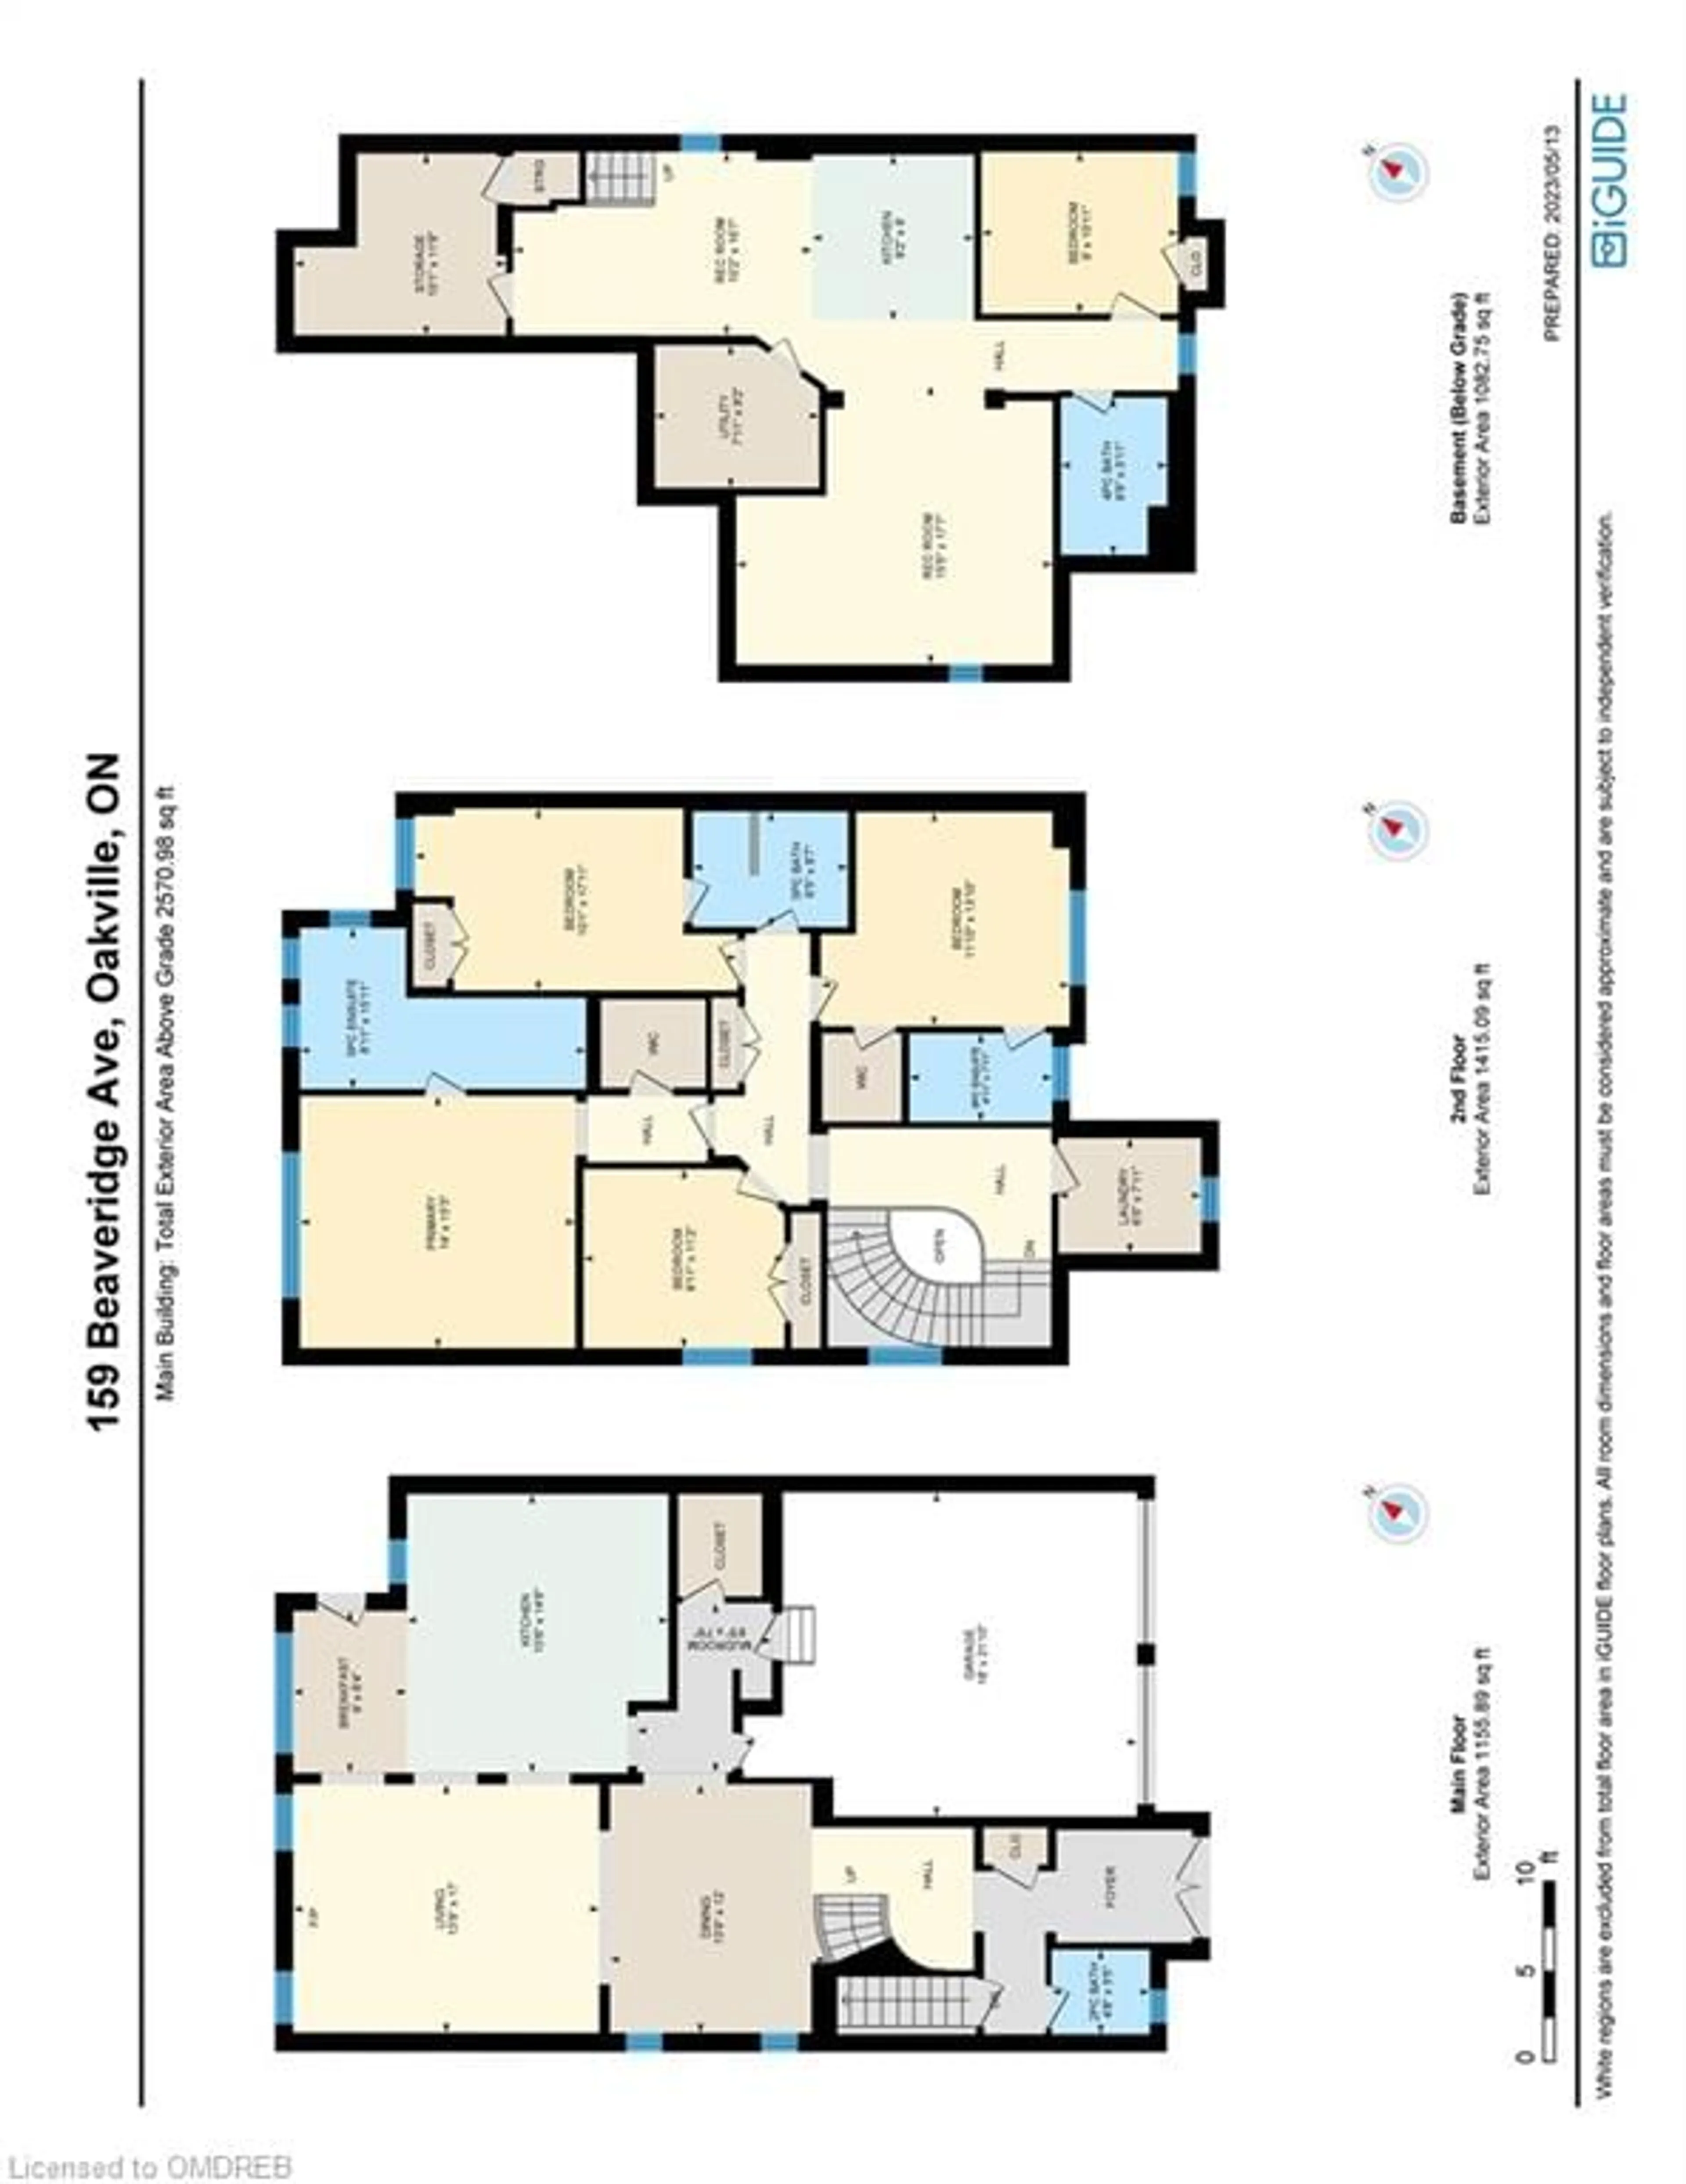 Floor plan for 159 Beaveridge Ave, Oakville Ontario L6H 0M6